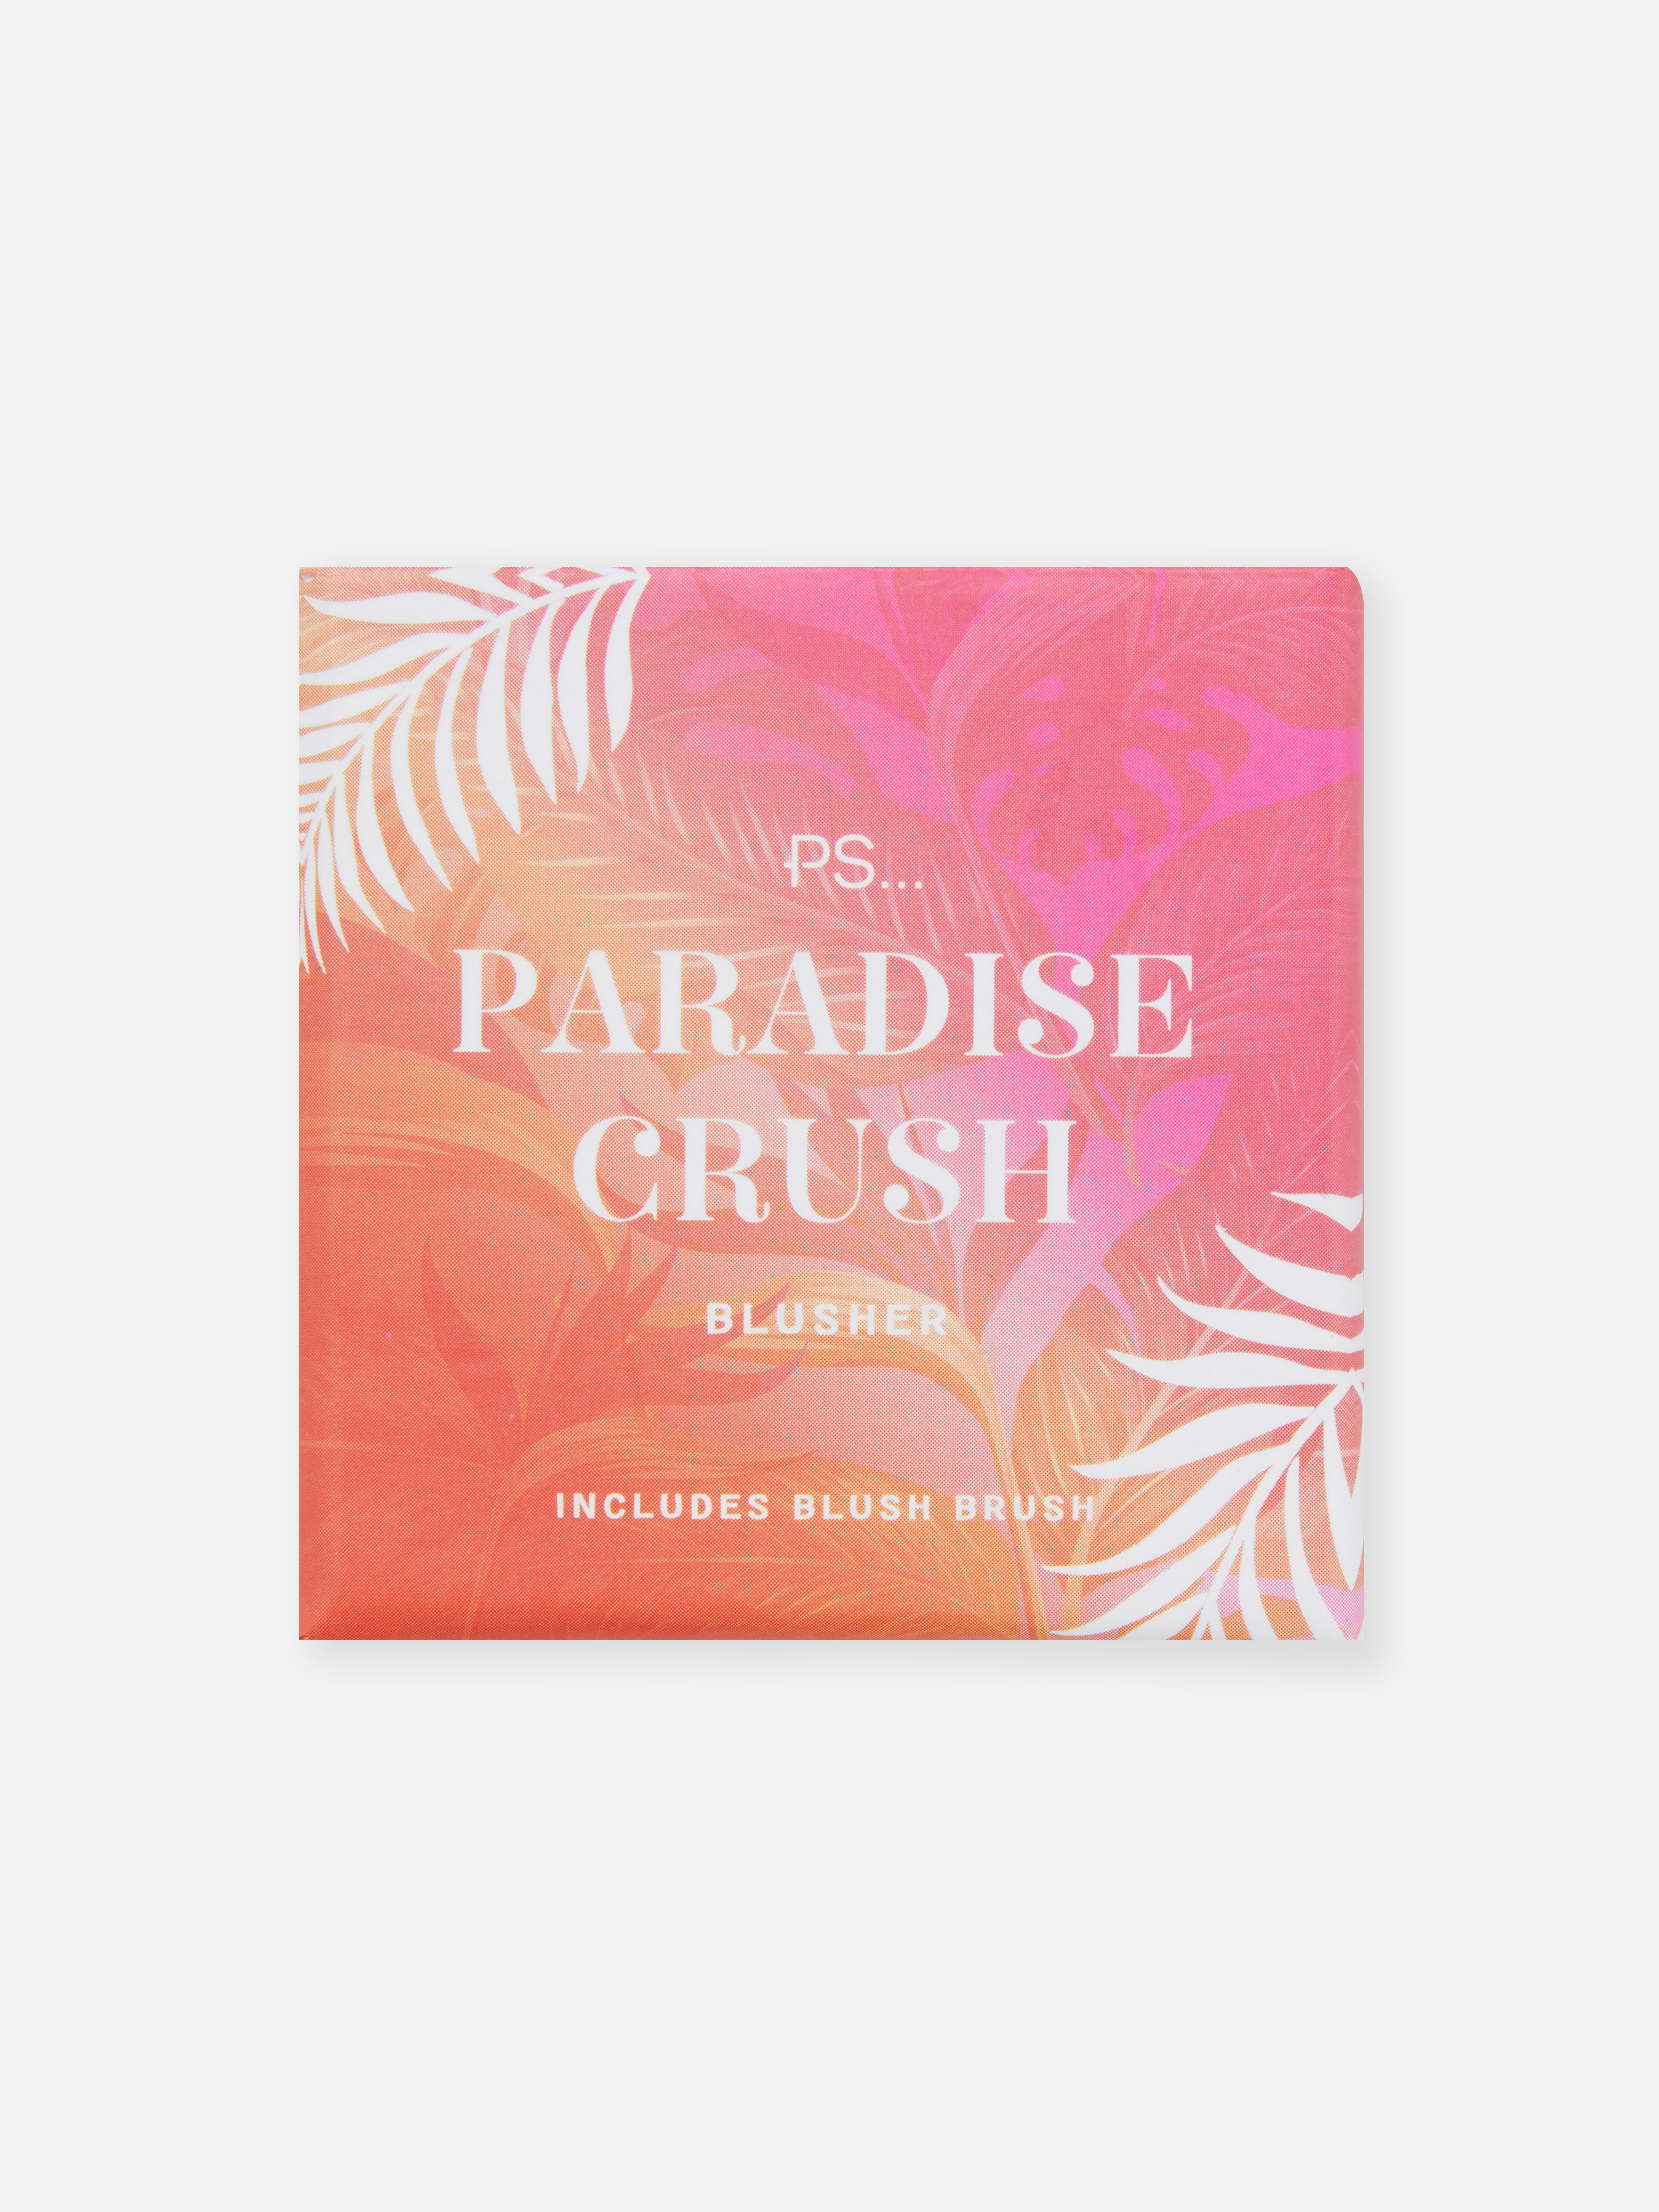 PS Paradise Crush Blusher